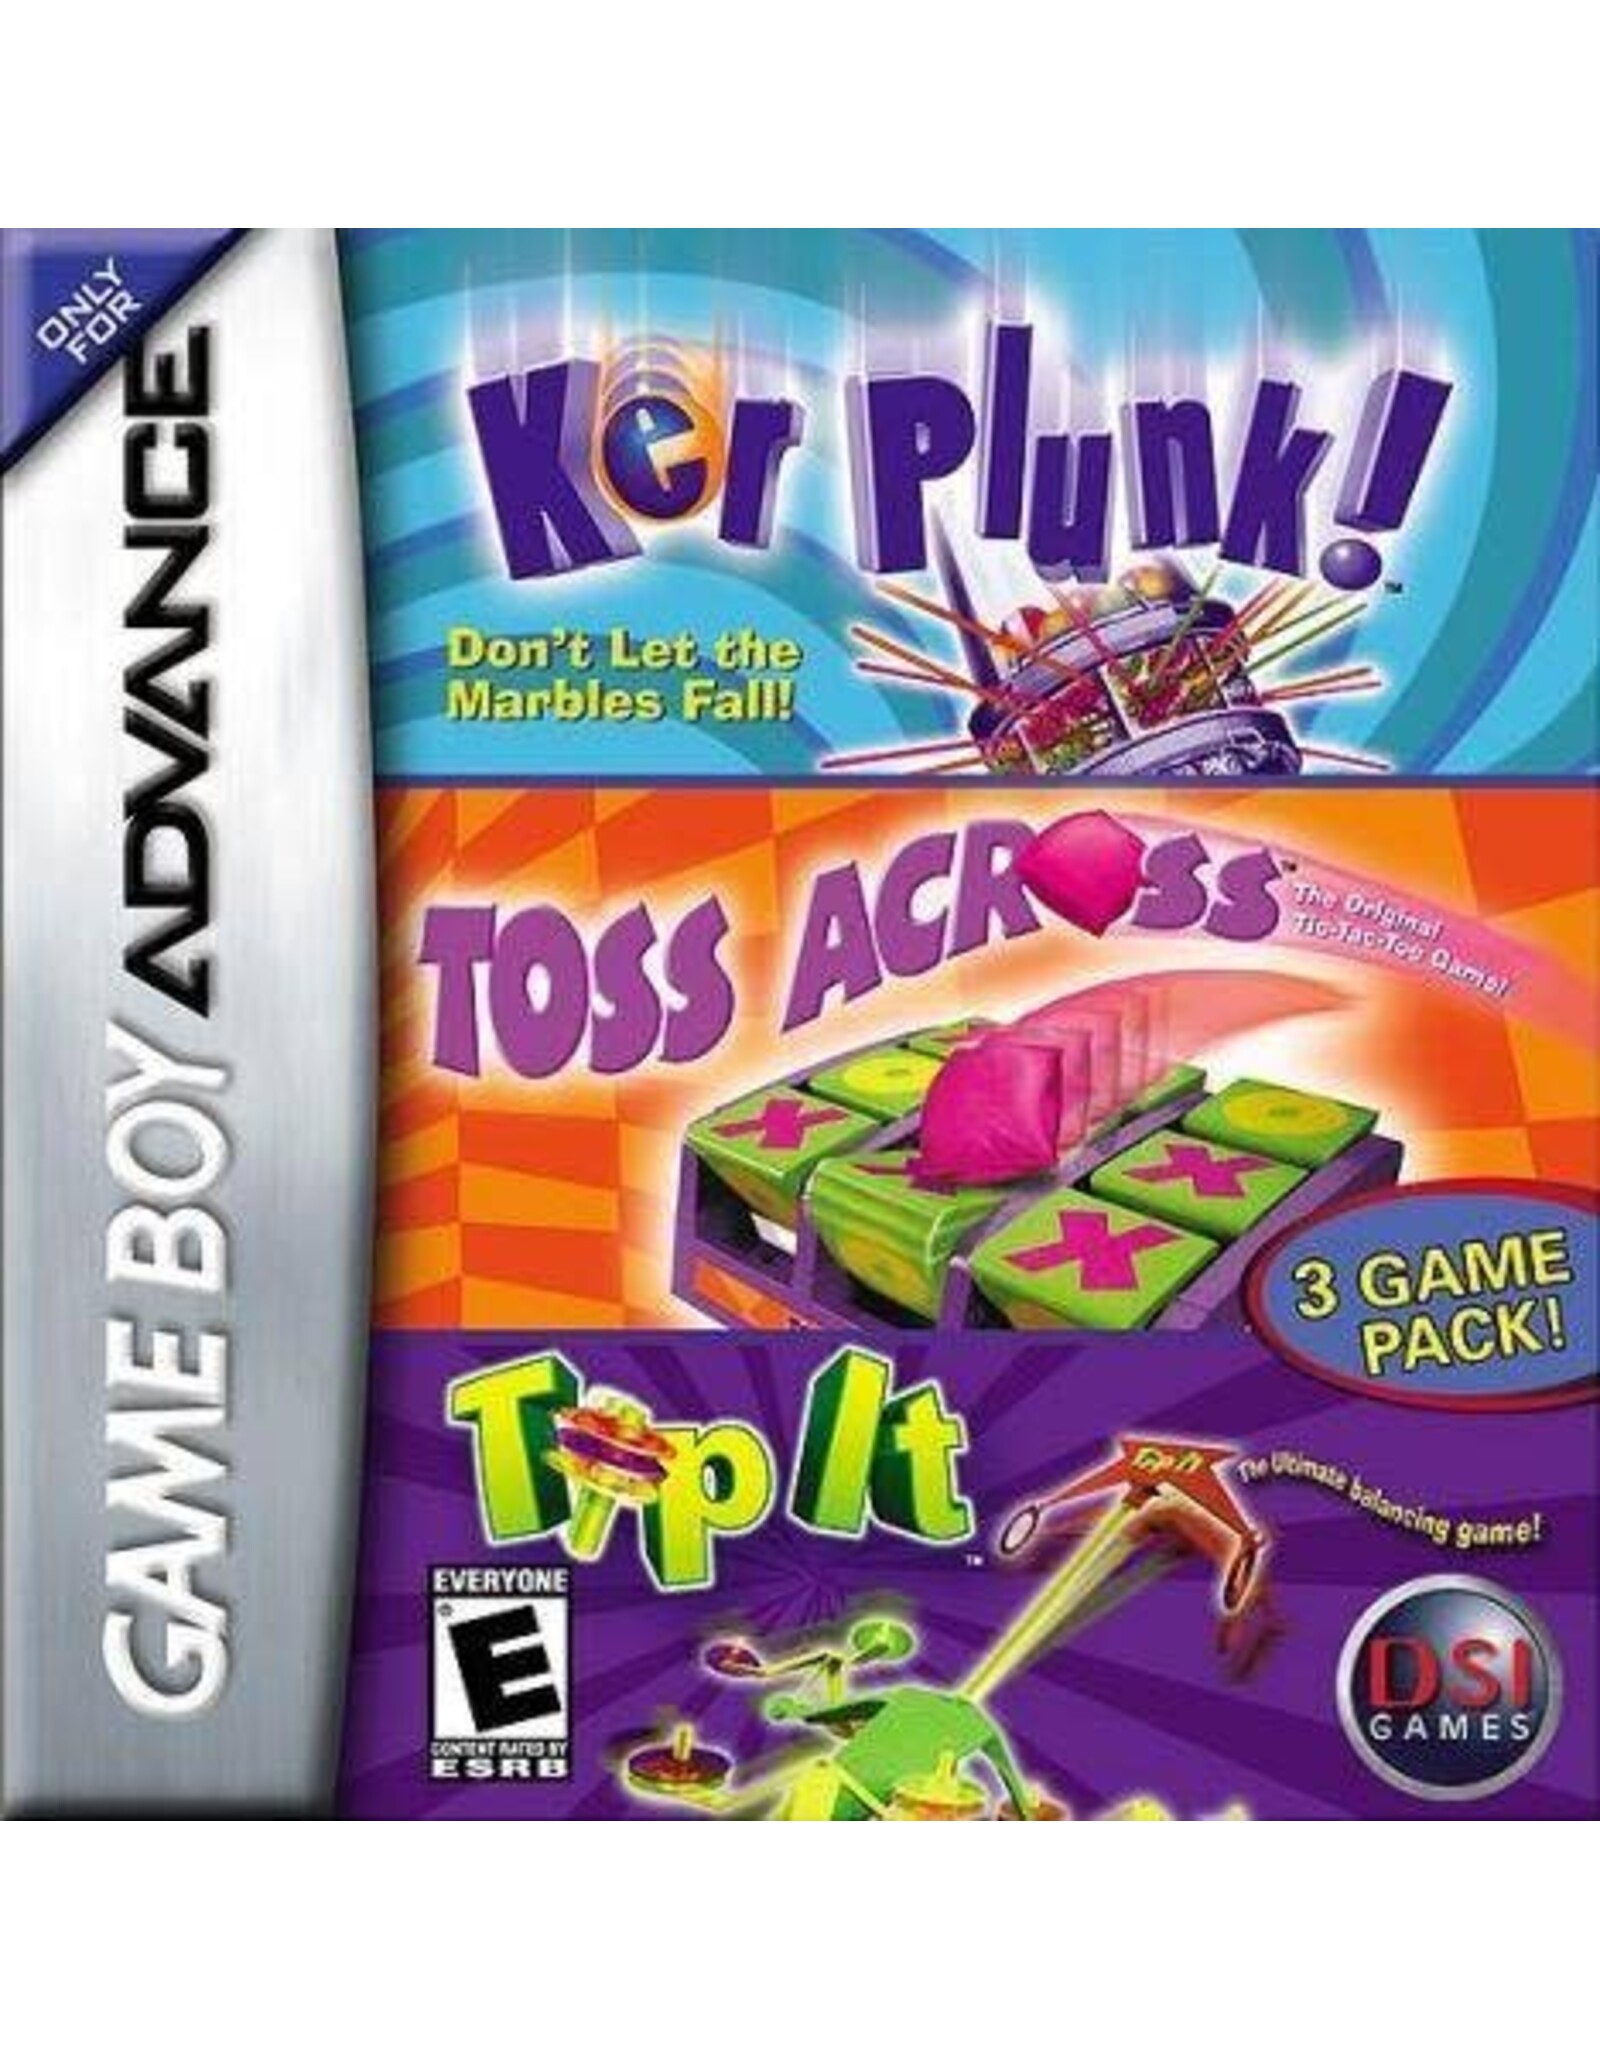 Game Boy Advance Kerplunk / Toss Across / Tip It (Cart Only)